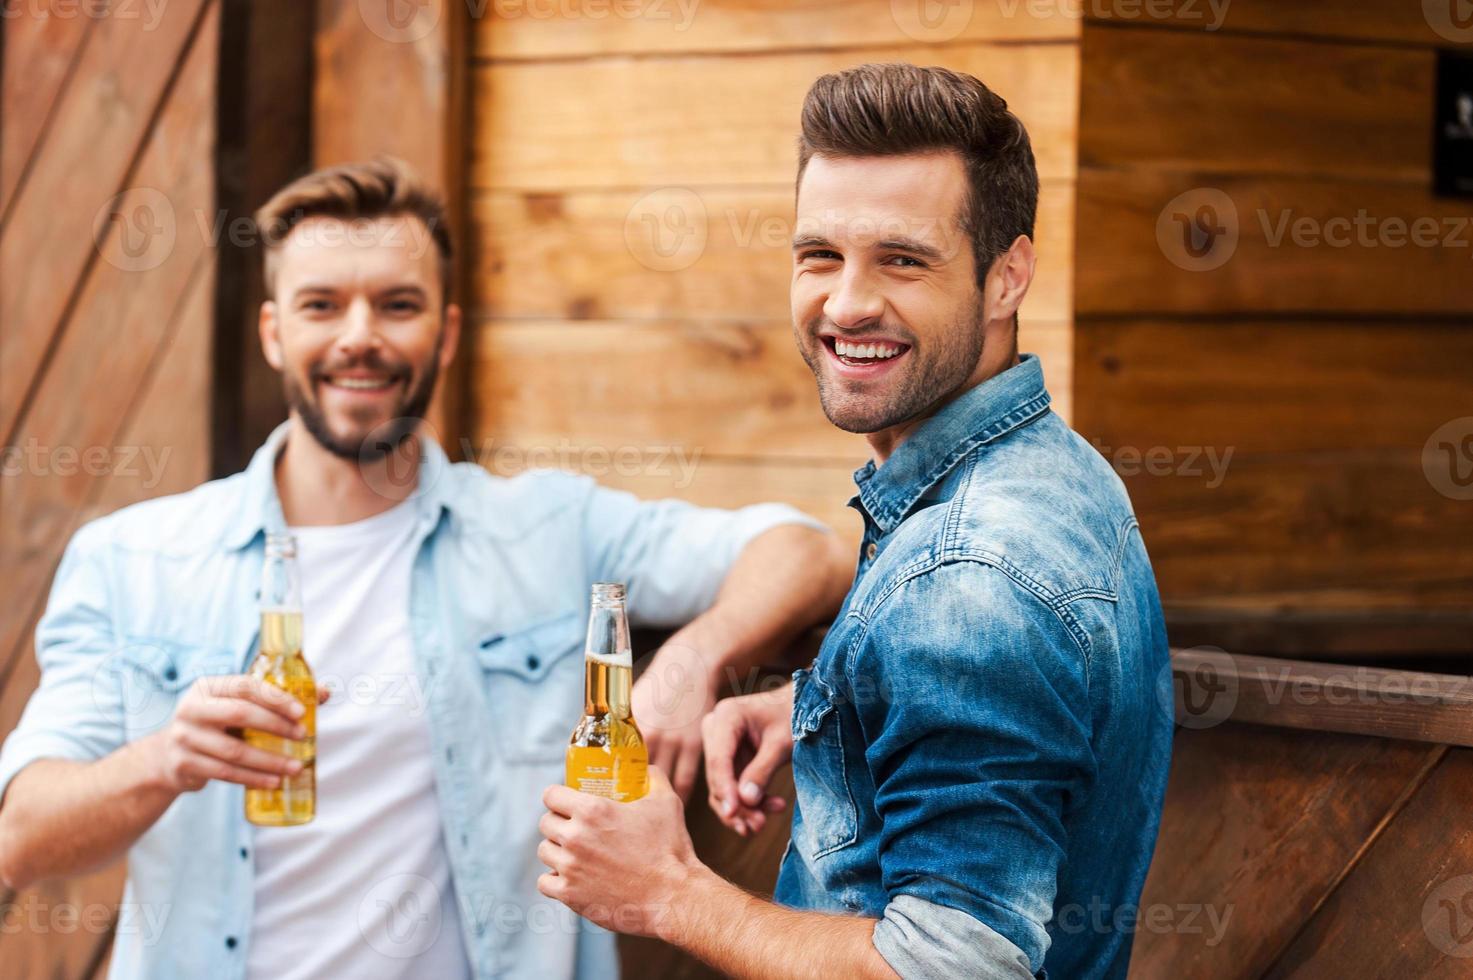 velhos amigos reunidos. dois jovens alegres segurando garrafas com cerveja e olhando para a câmera enquanto se inclina no balcão do bar foto